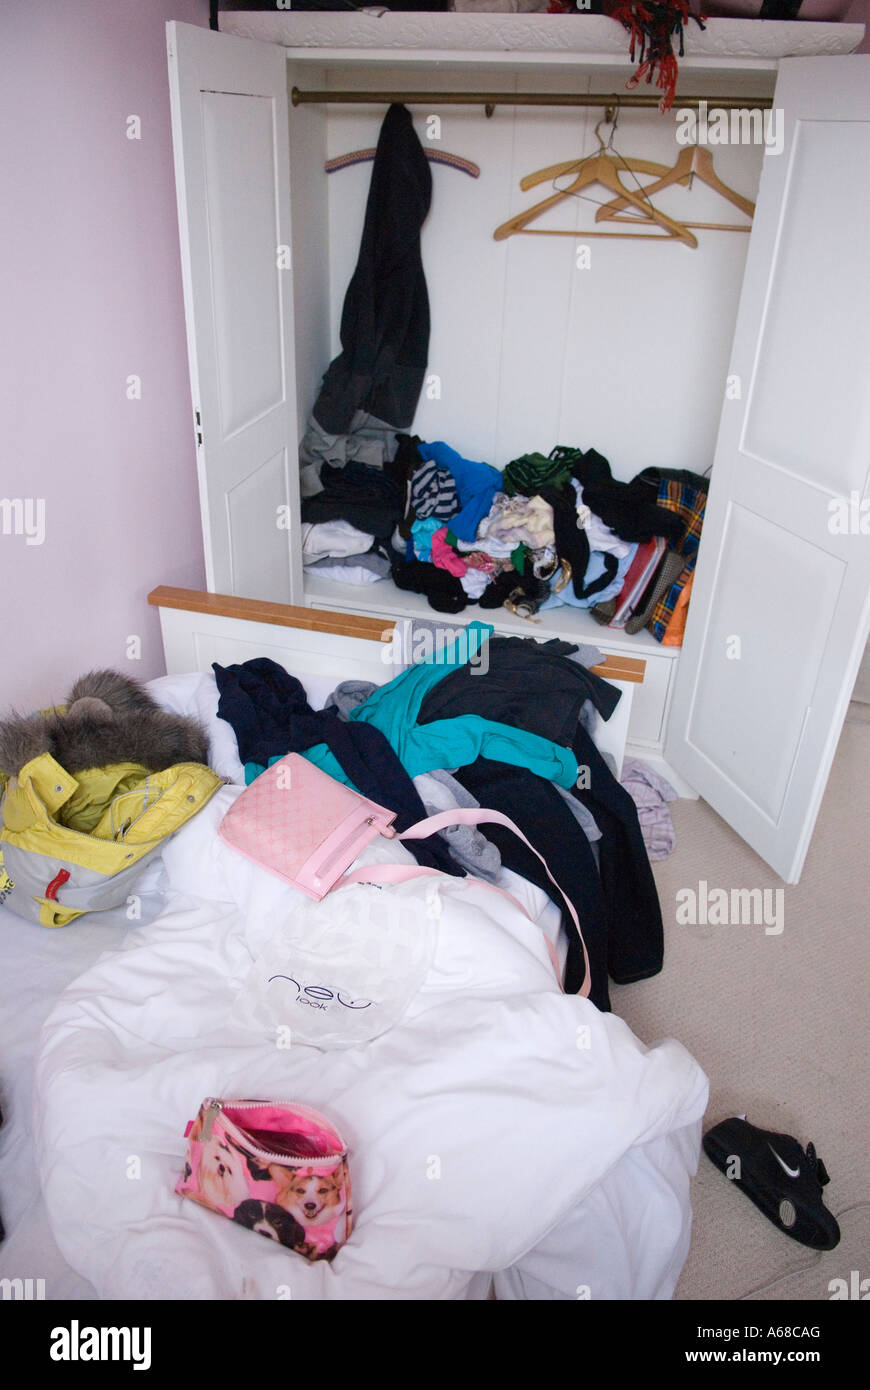 Jugendliche ungepflegt unordentlich Schlafzimmer UK. Jugendlich Mädchen, fünfzehn Jahre altes Bett Zimmer und ungemachten Bett und Schrank HOMER SYKES Stockfoto